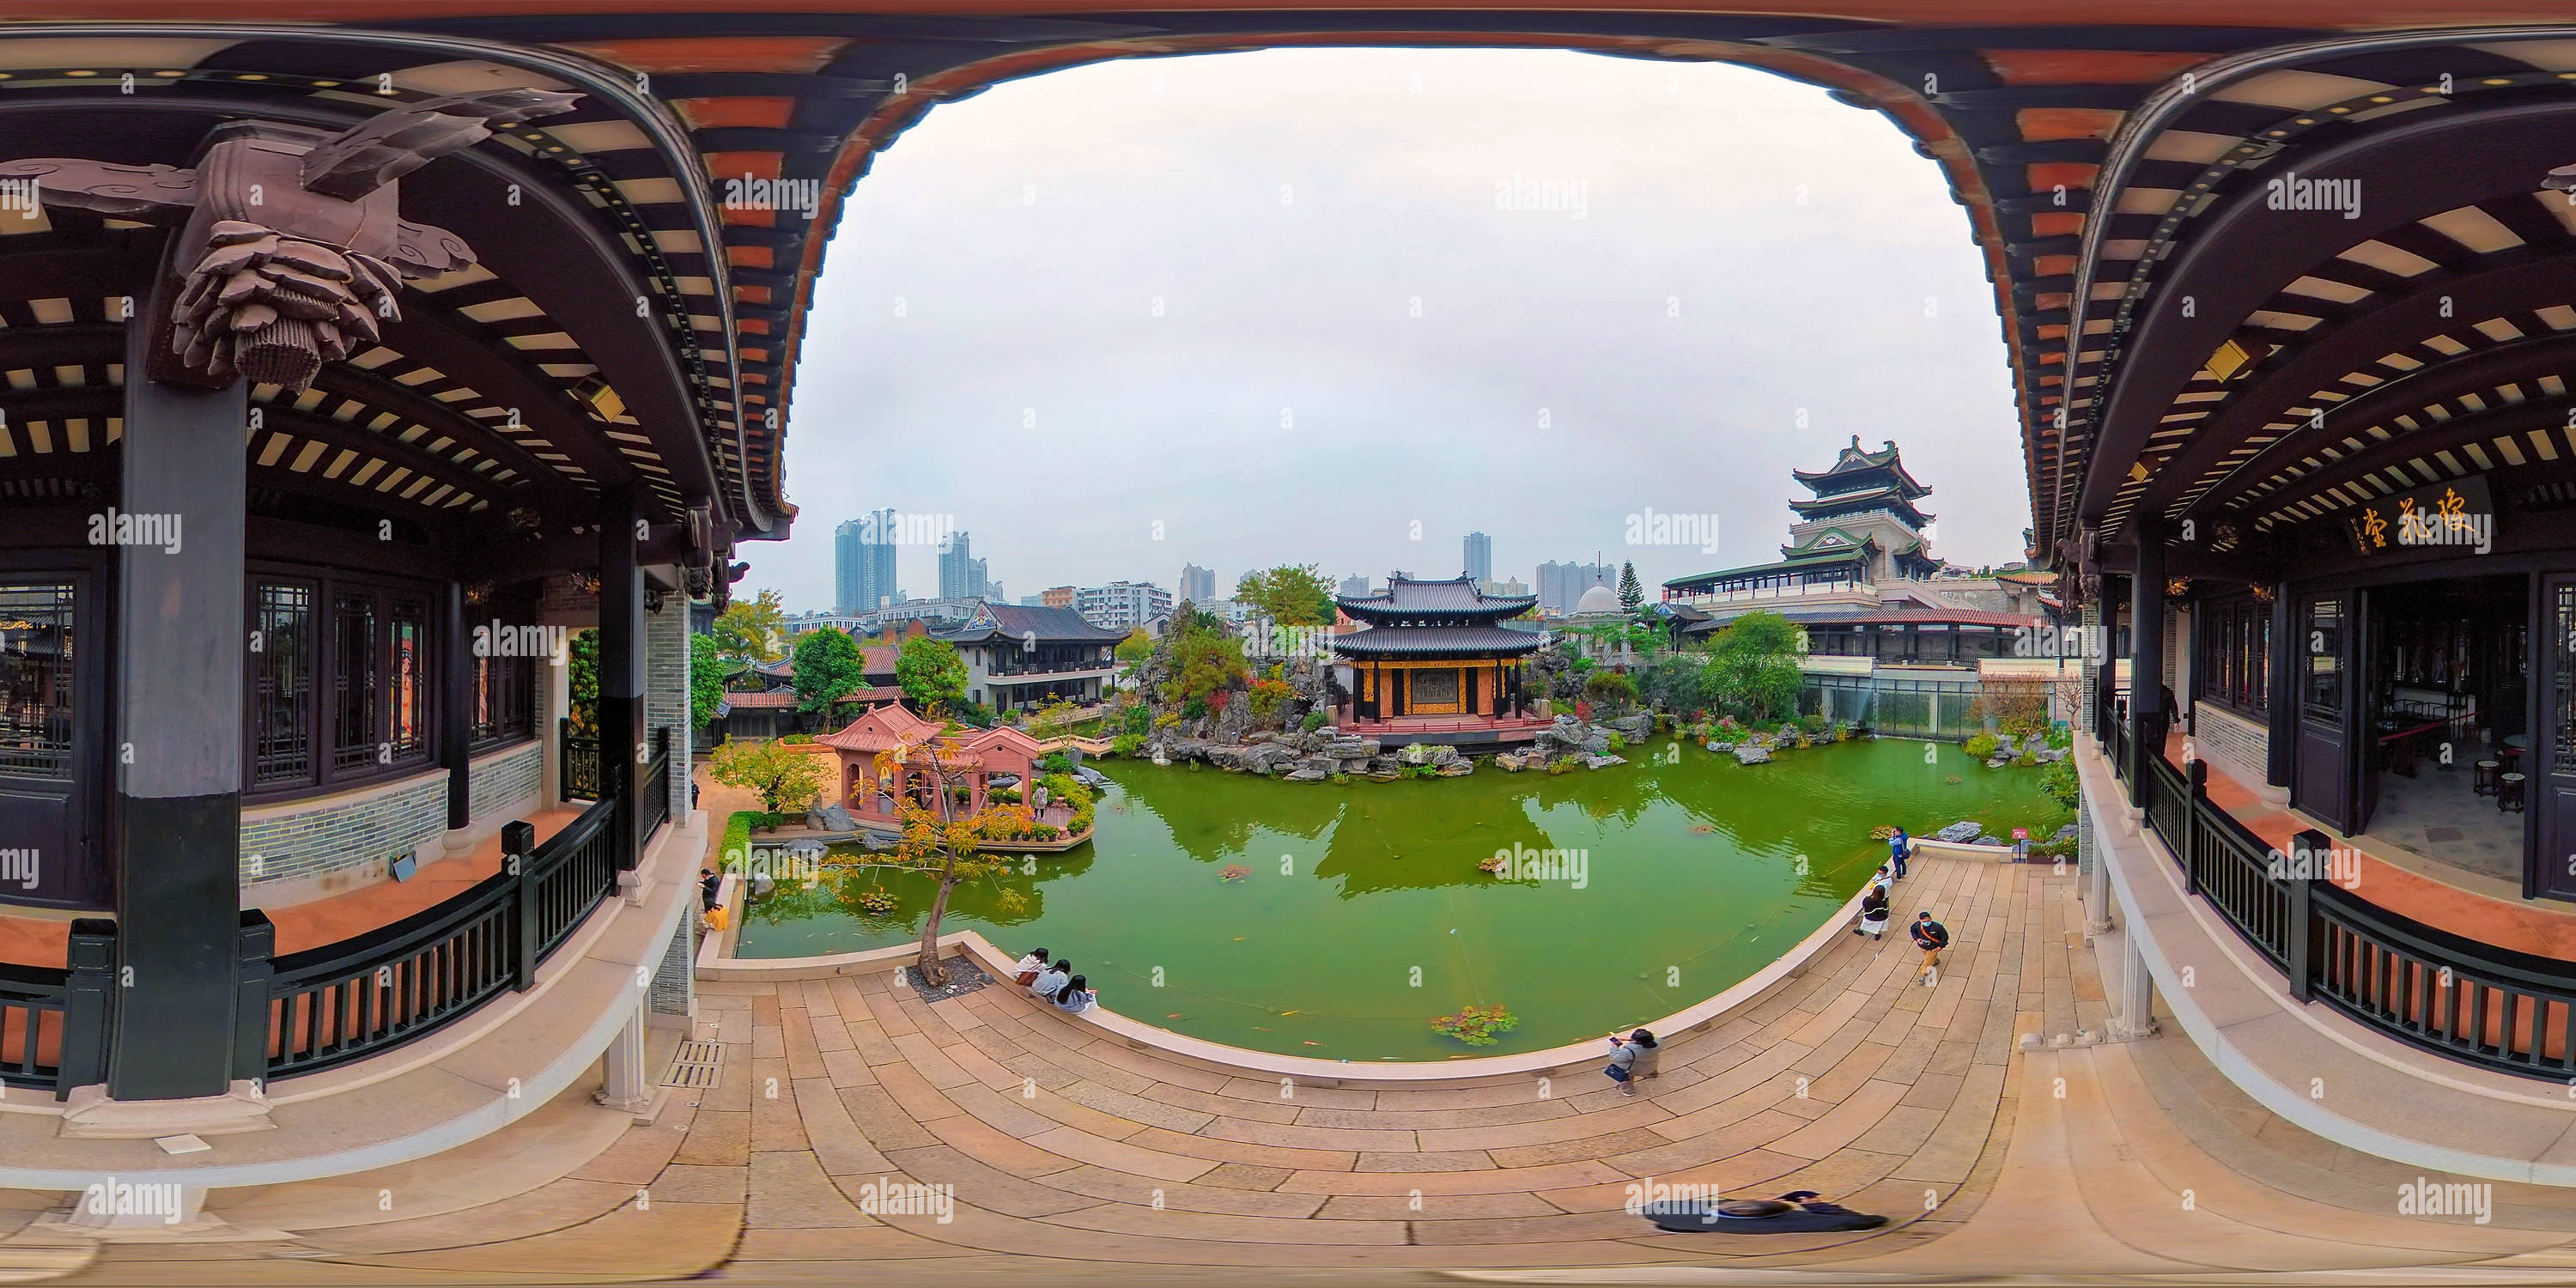 360 Grad Panorama Ansicht von Blick auf die Gartenarchitektur und die Bühne des Kantonesischen Opernmuseums Guangzhou